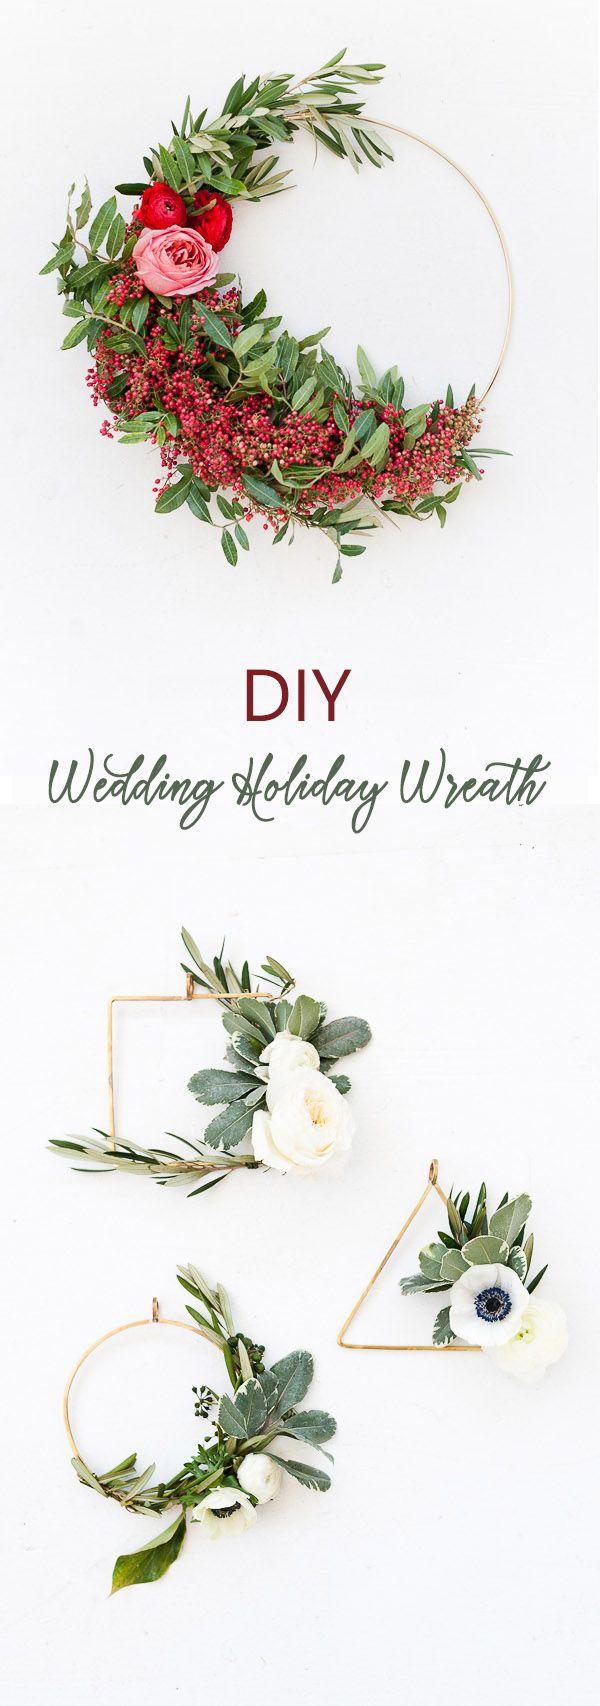 Wedding - 28 Creative & Budget-friendly DIY Wedding Decoration Ideas